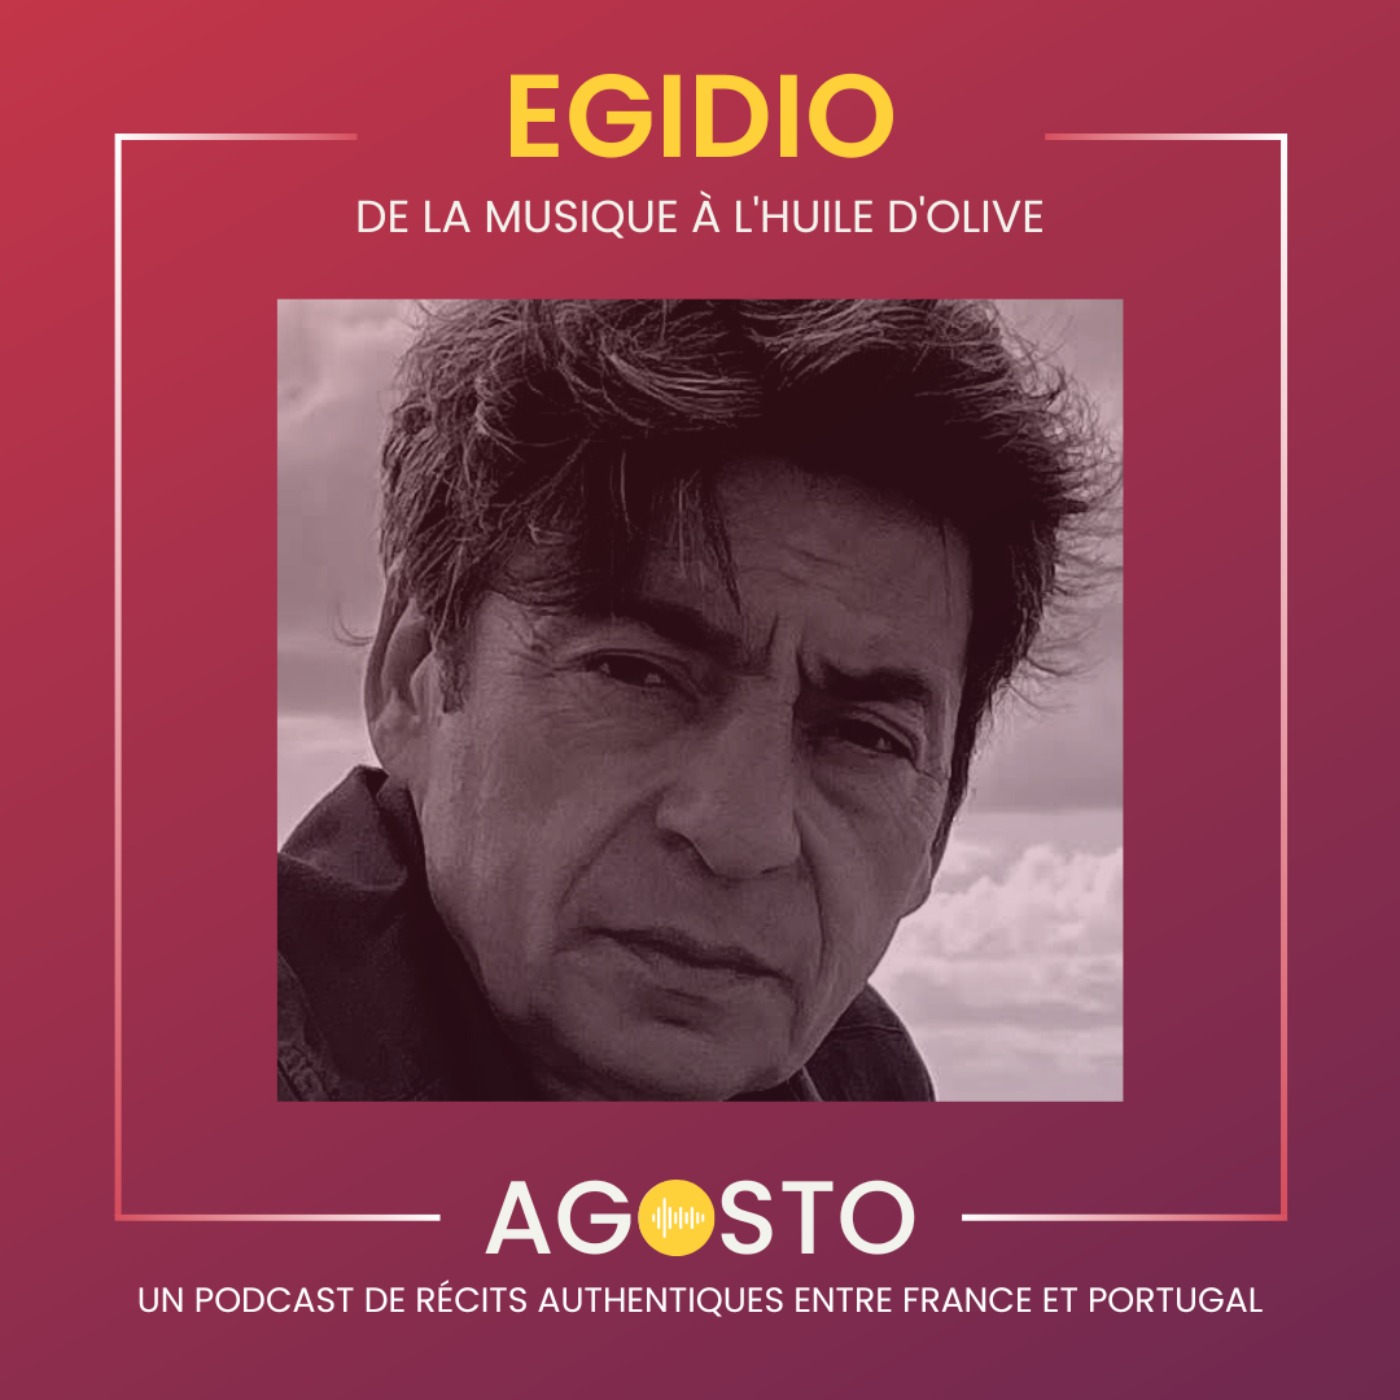 Egidio, de la musique à l'huile d'olive